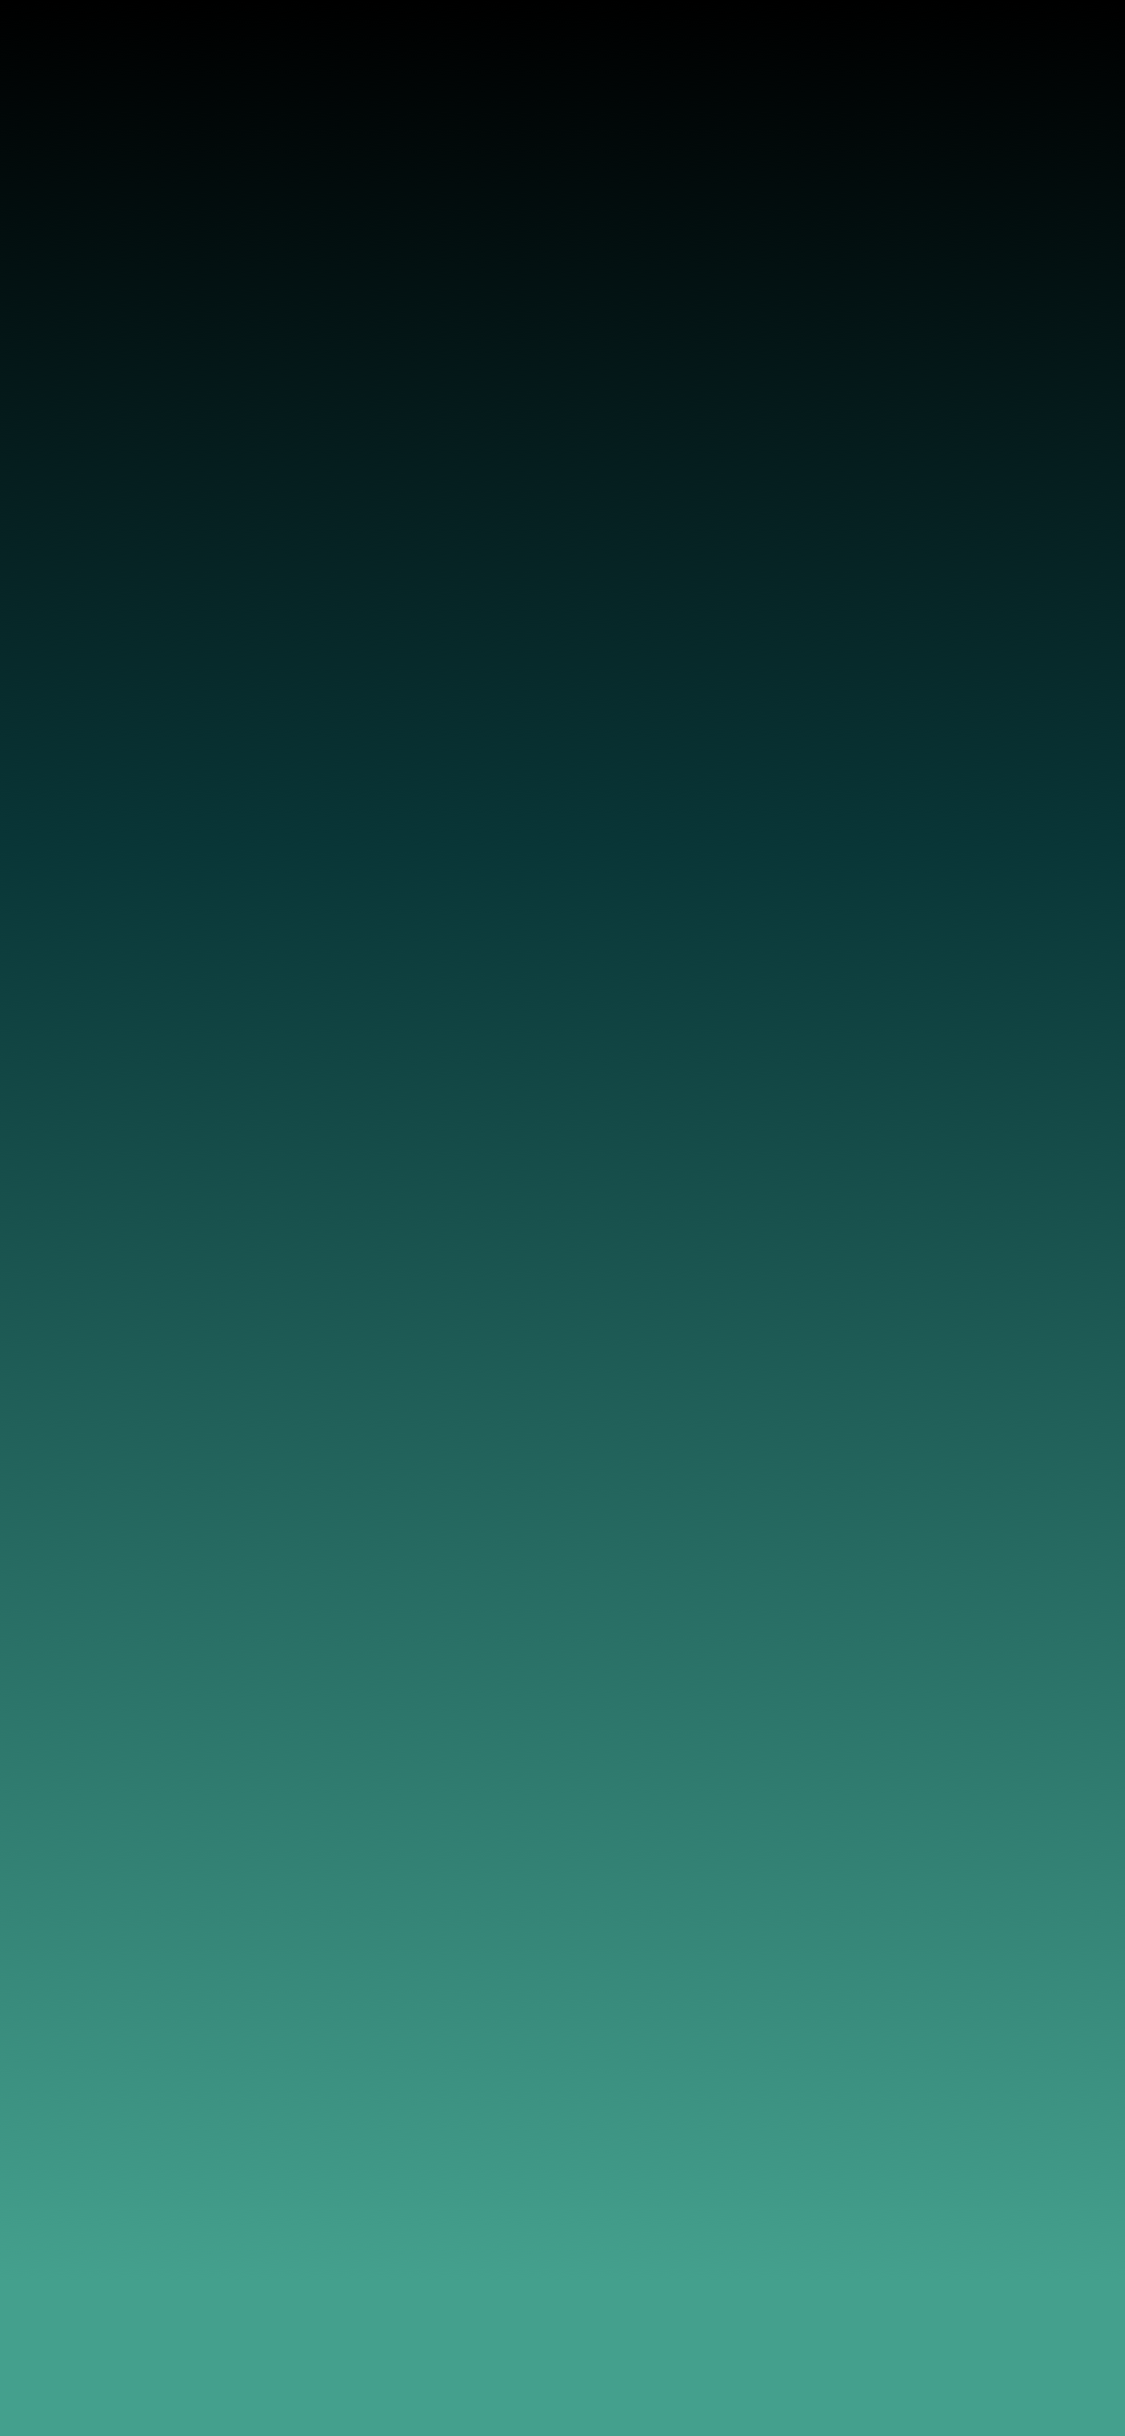 그라디언트 아이폰 배경 화면,초록,푸른,아쿠아,터키 옥,물오리